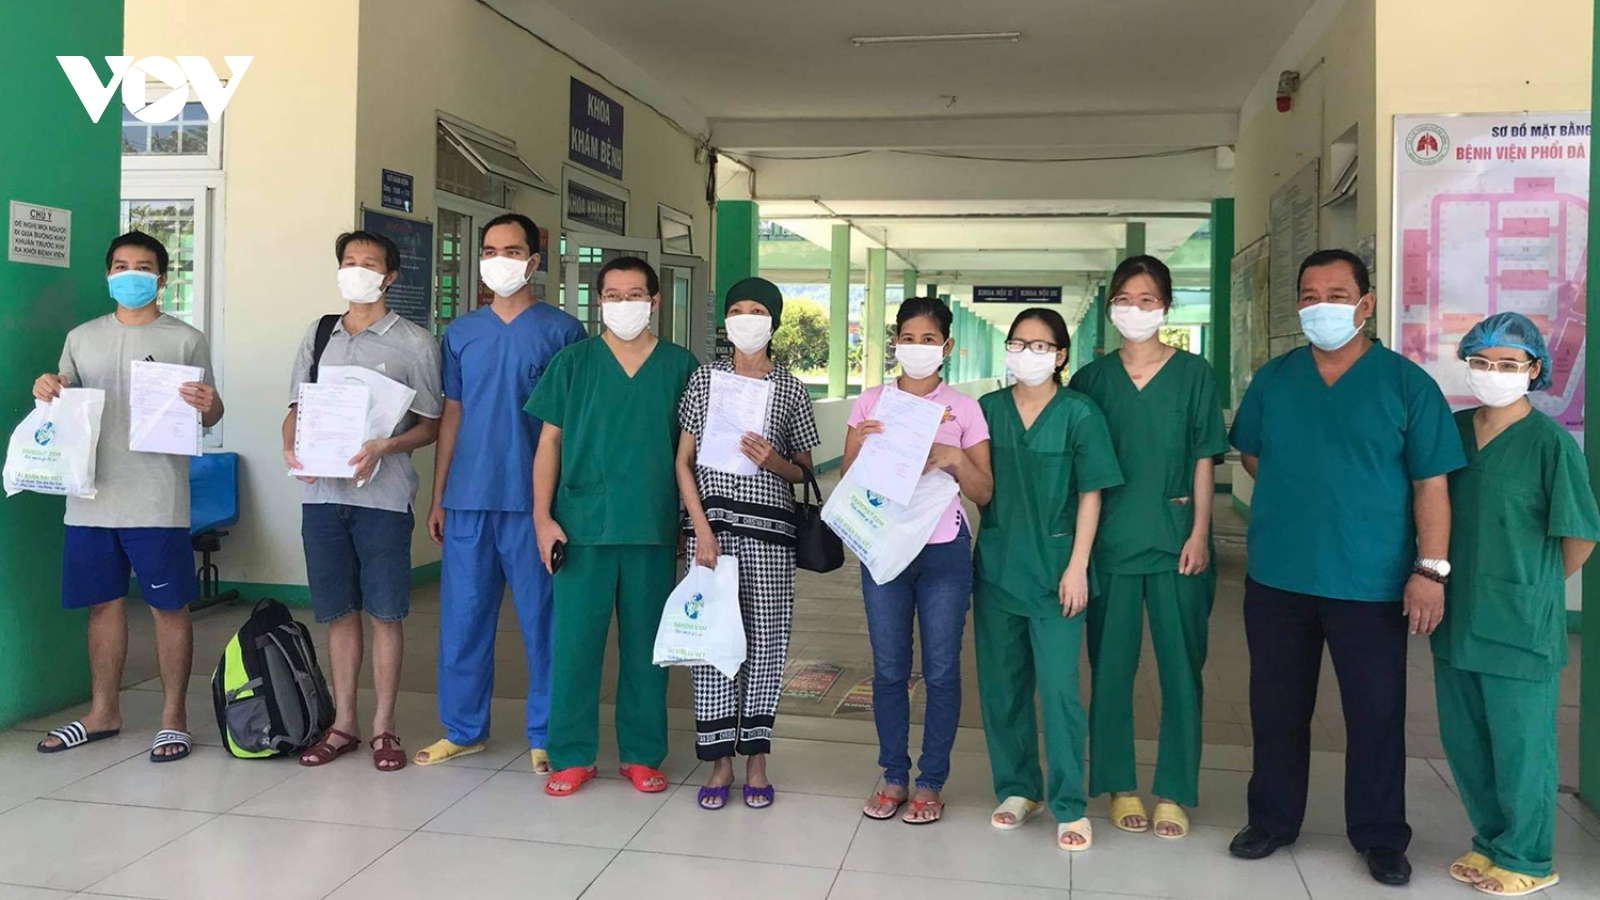 Bệnh viện Phổi Đà Nẵng: Từ nay đến cuối tuần sẽ không còn điều trị bệnh nhân Covid-19